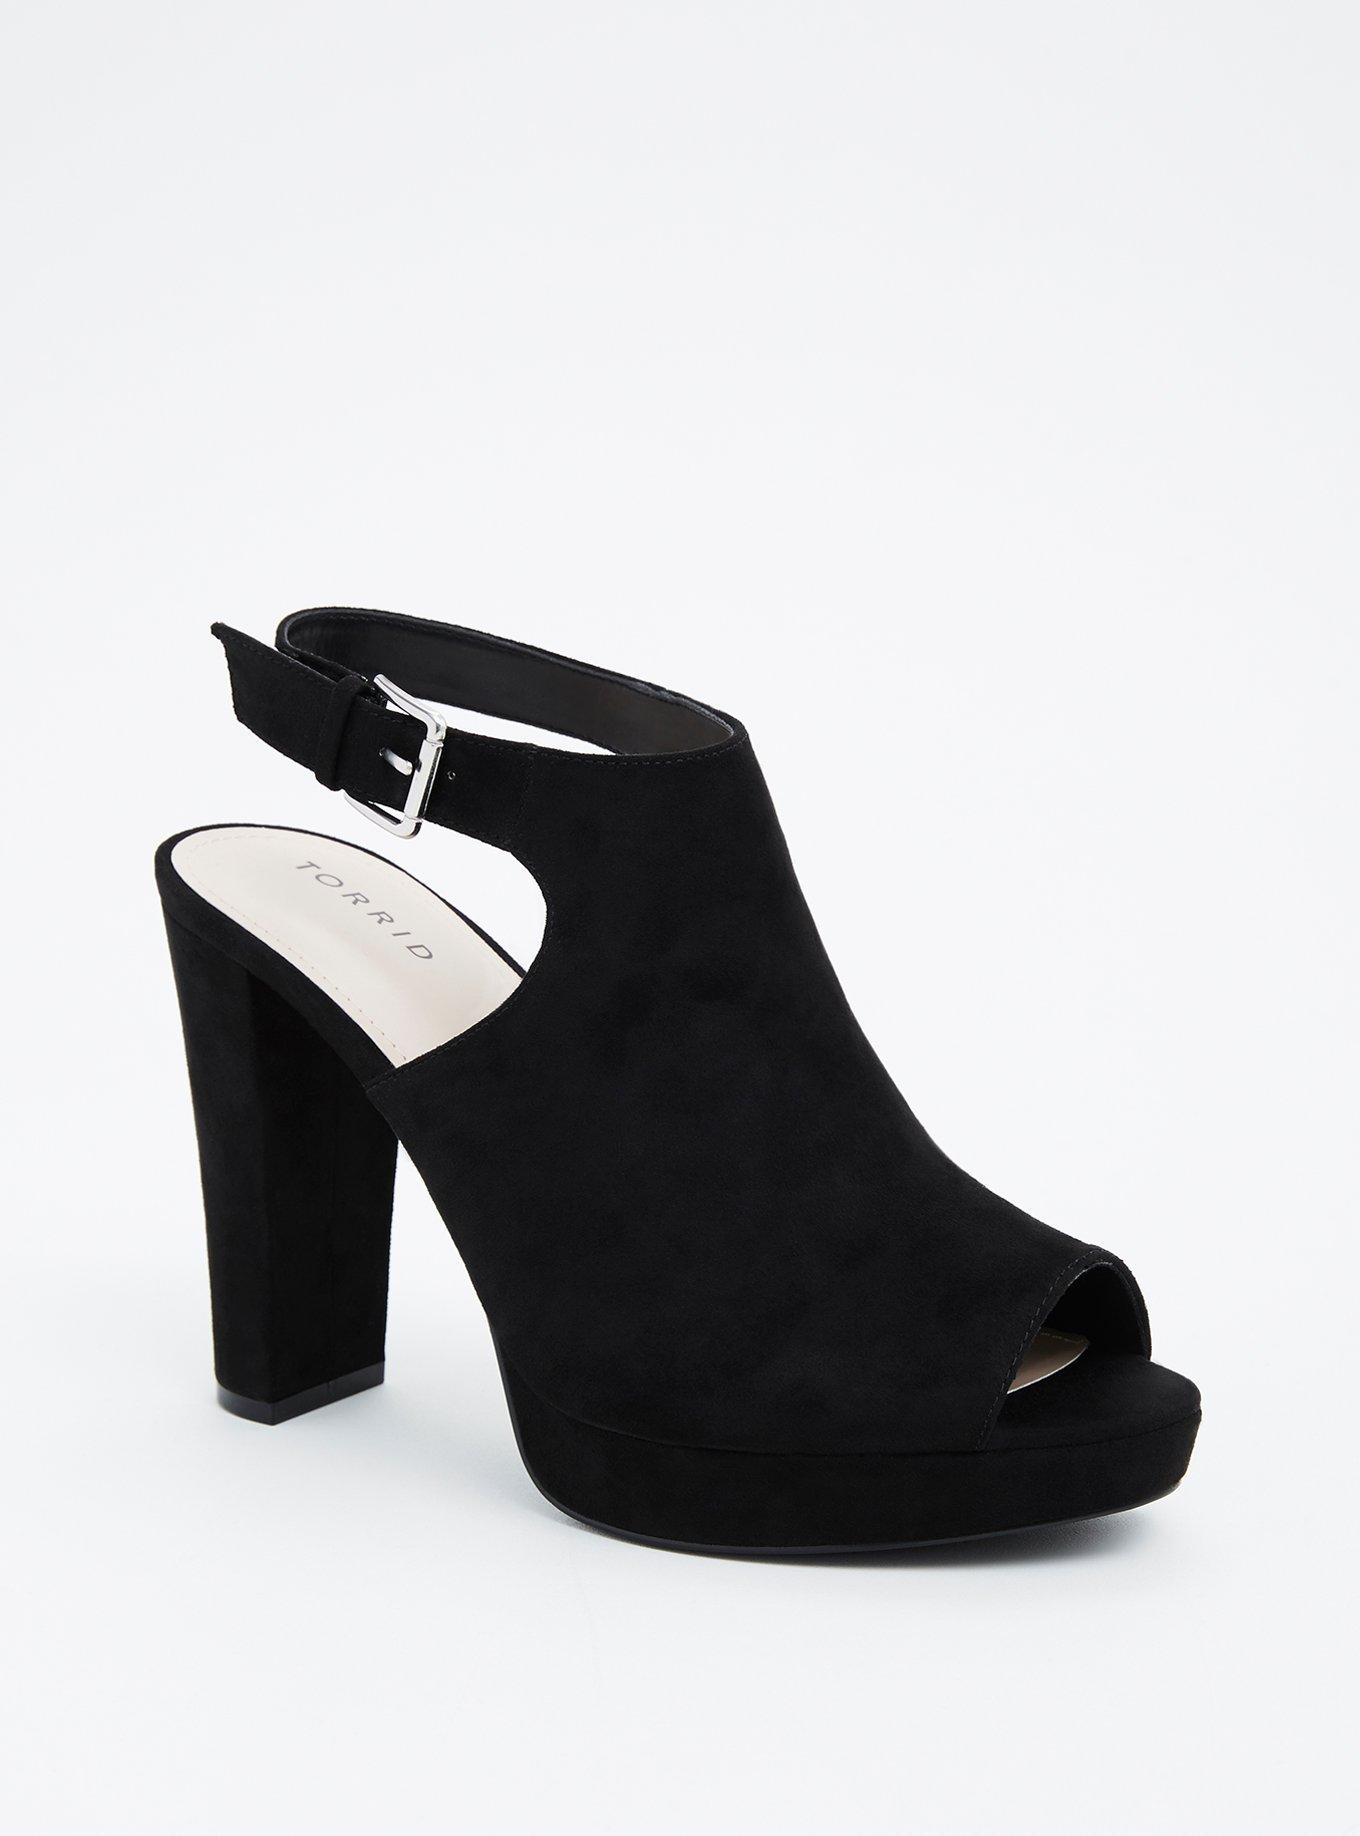 Plus Size - Black Peep Toe Heel (Wide Width) - Torrid